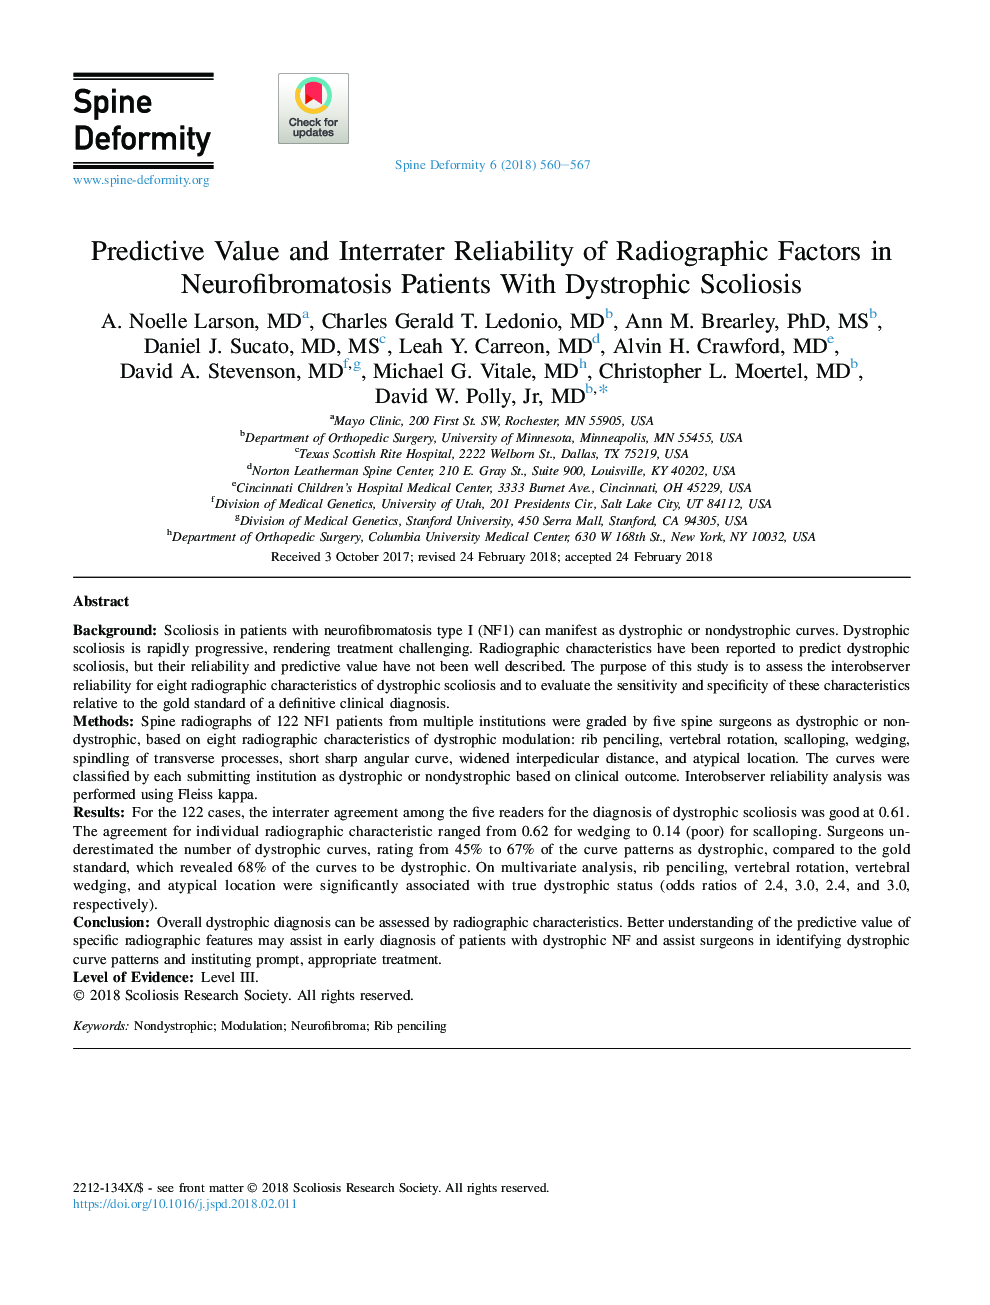 ارزش پیش بینی کننده و قابلیت اطمینان بینابینی عوامل رادیوگرافی در بیماران مبتلا به نوروفیبروماتوزیس مبتلا به اسکولیوز دیستروفی